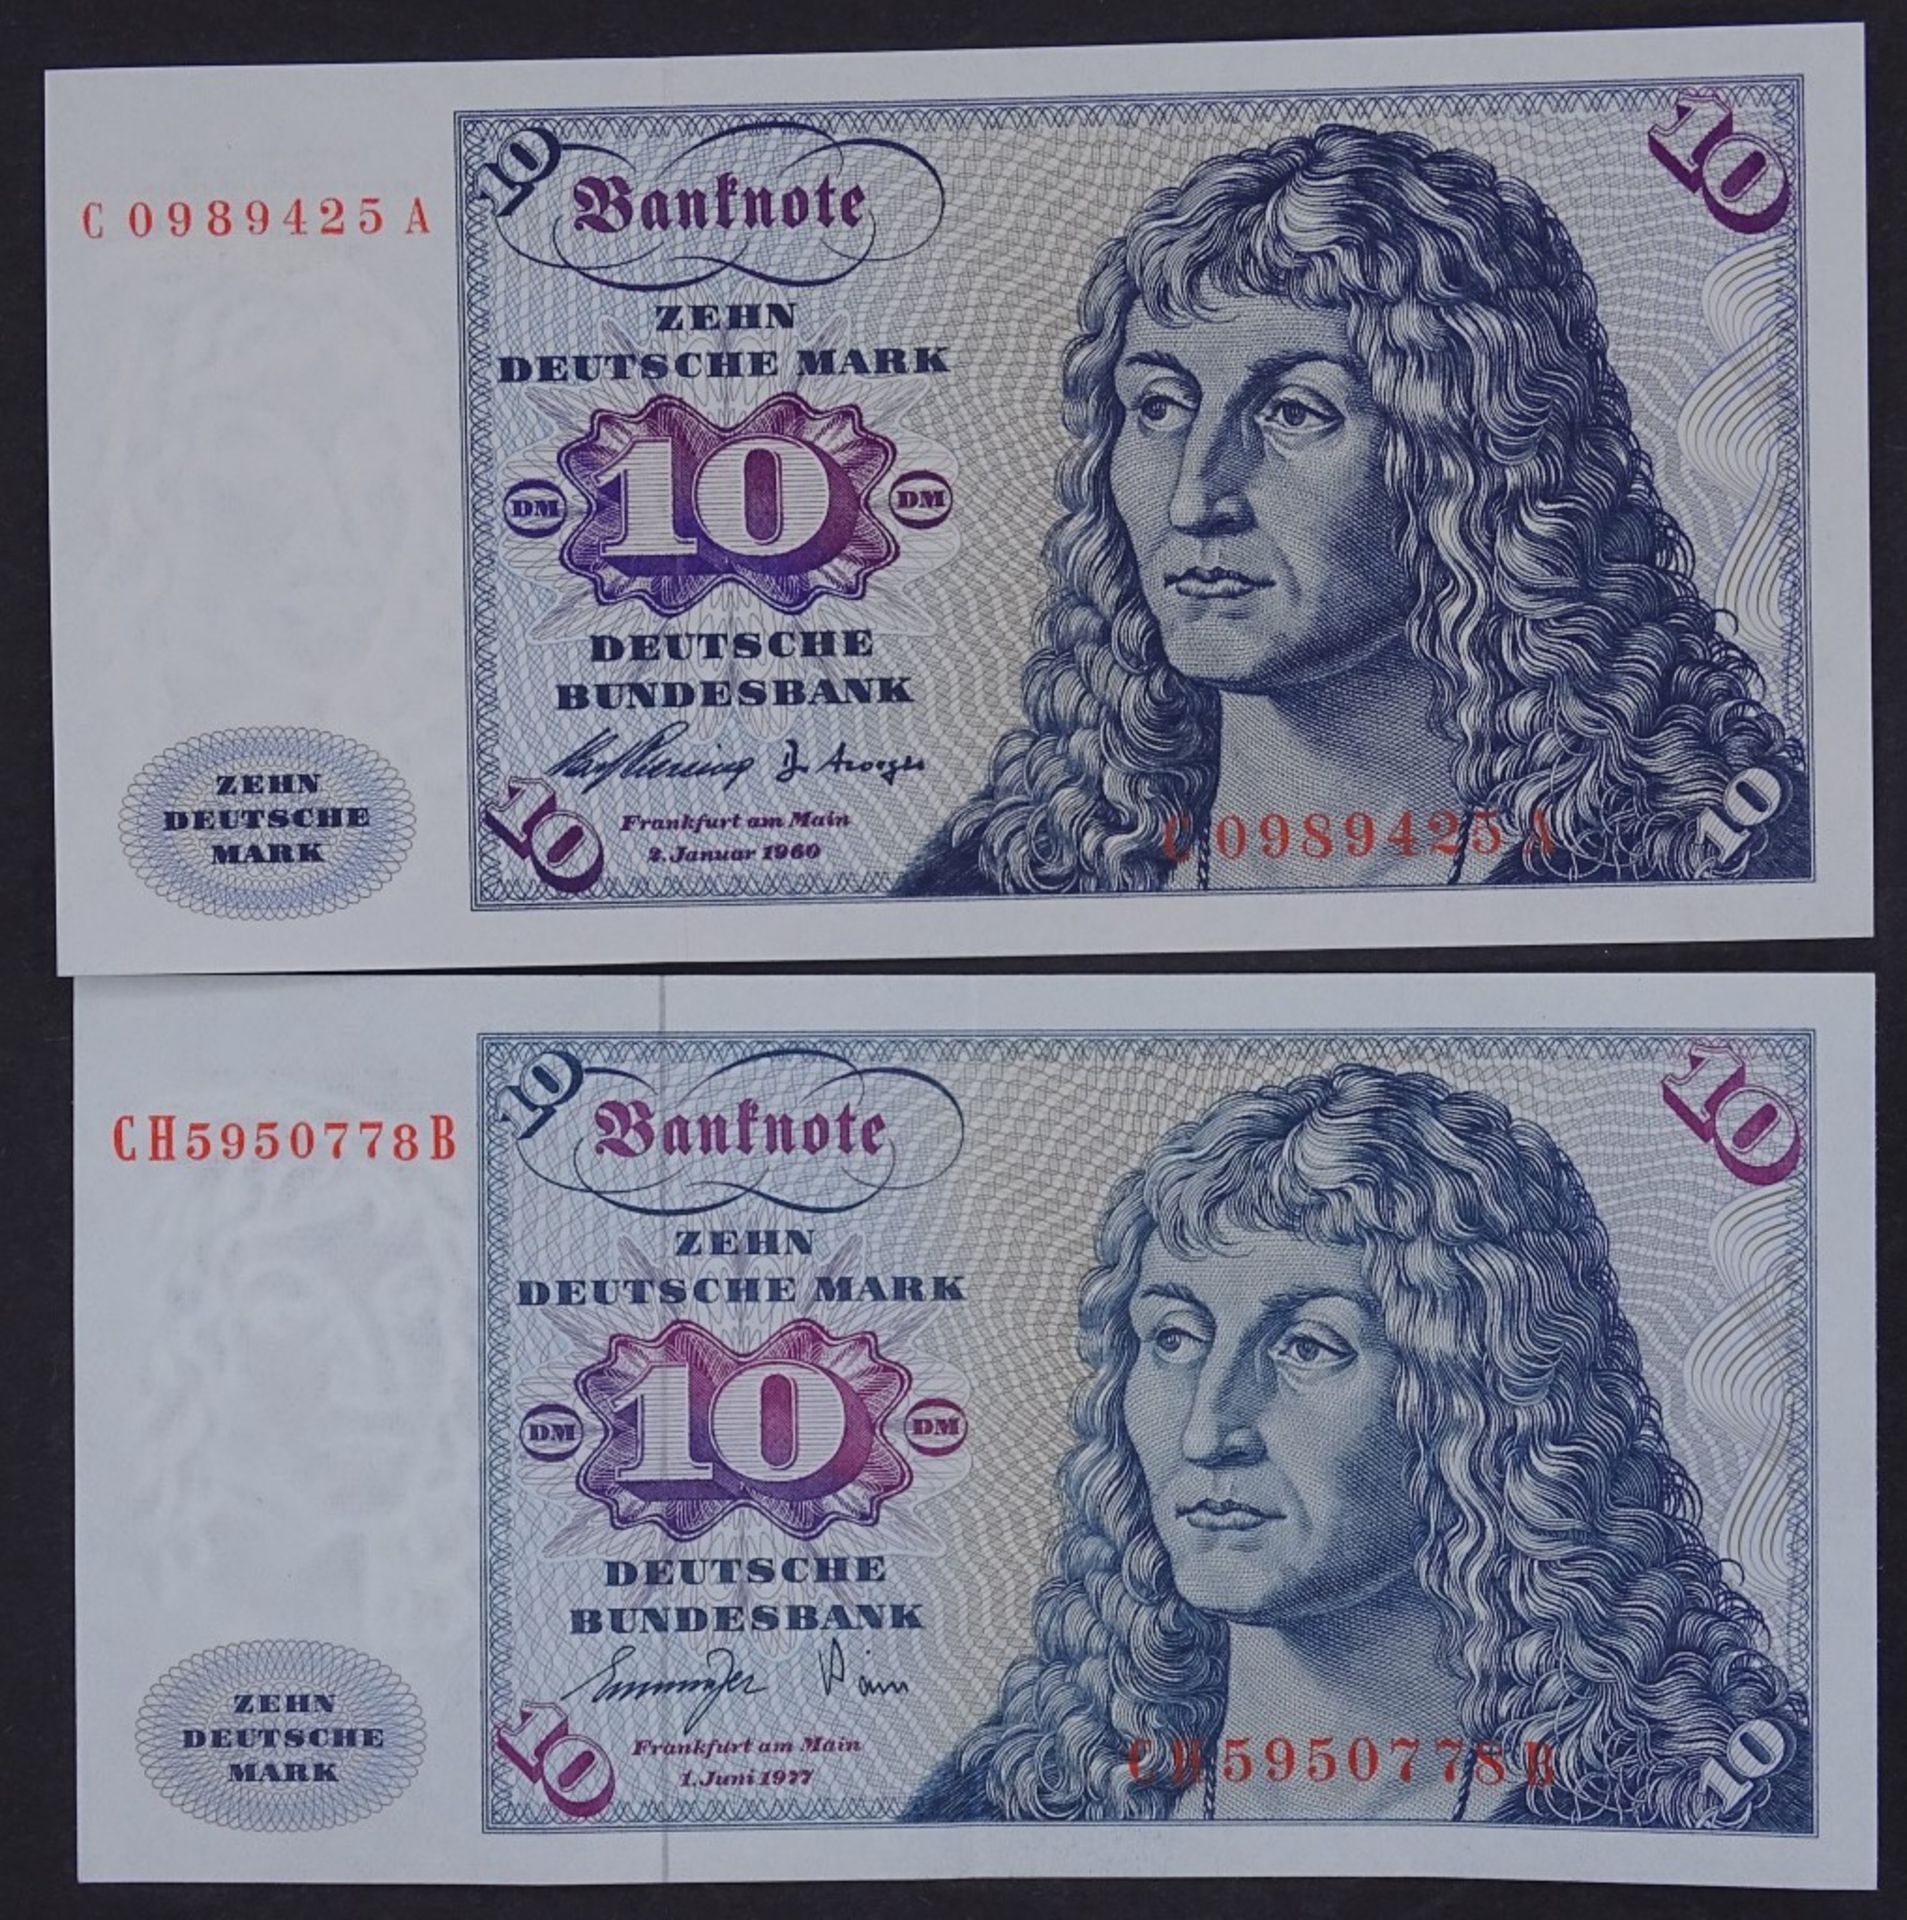 Zwei Banknoten - 10 Deutsche Mark 1960/77 - Deutsche Bundesbank- - -22.61 % buyer's premium on the